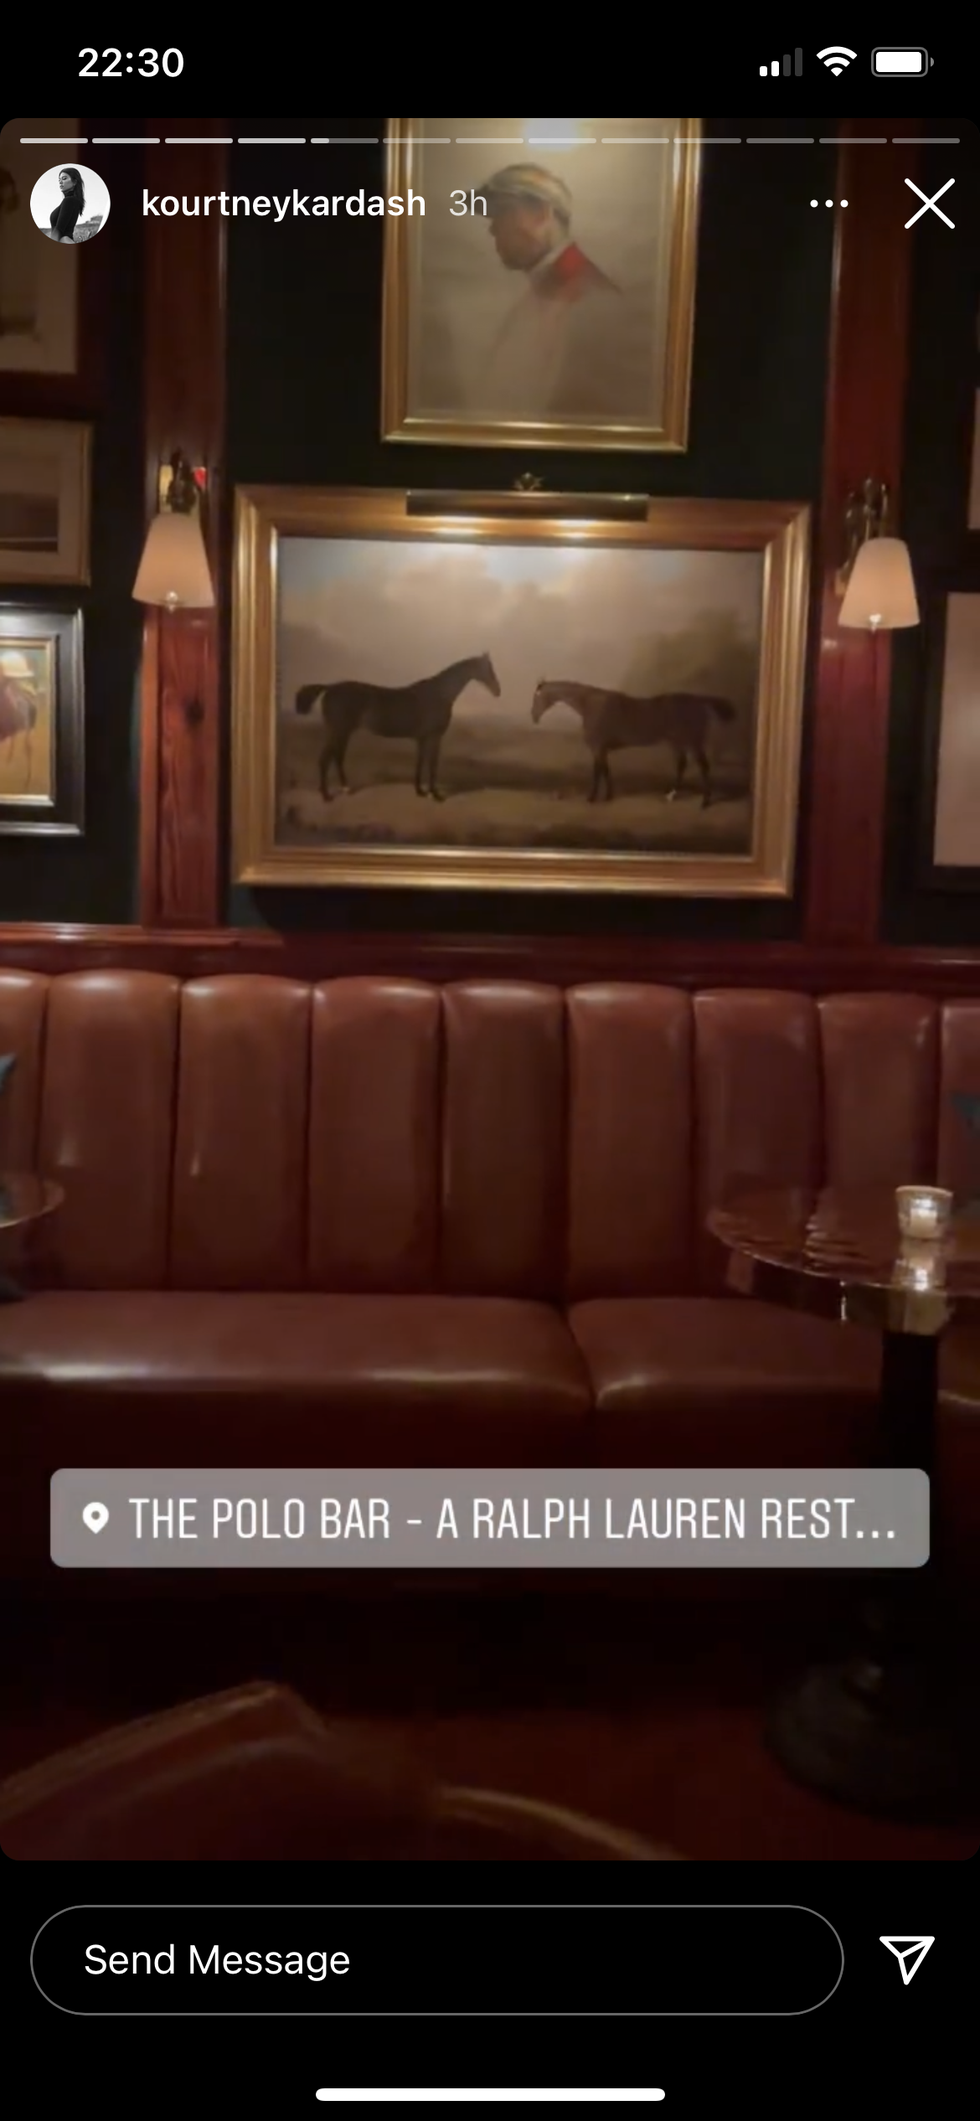 kourtney kardashian and travis barker at polo bar